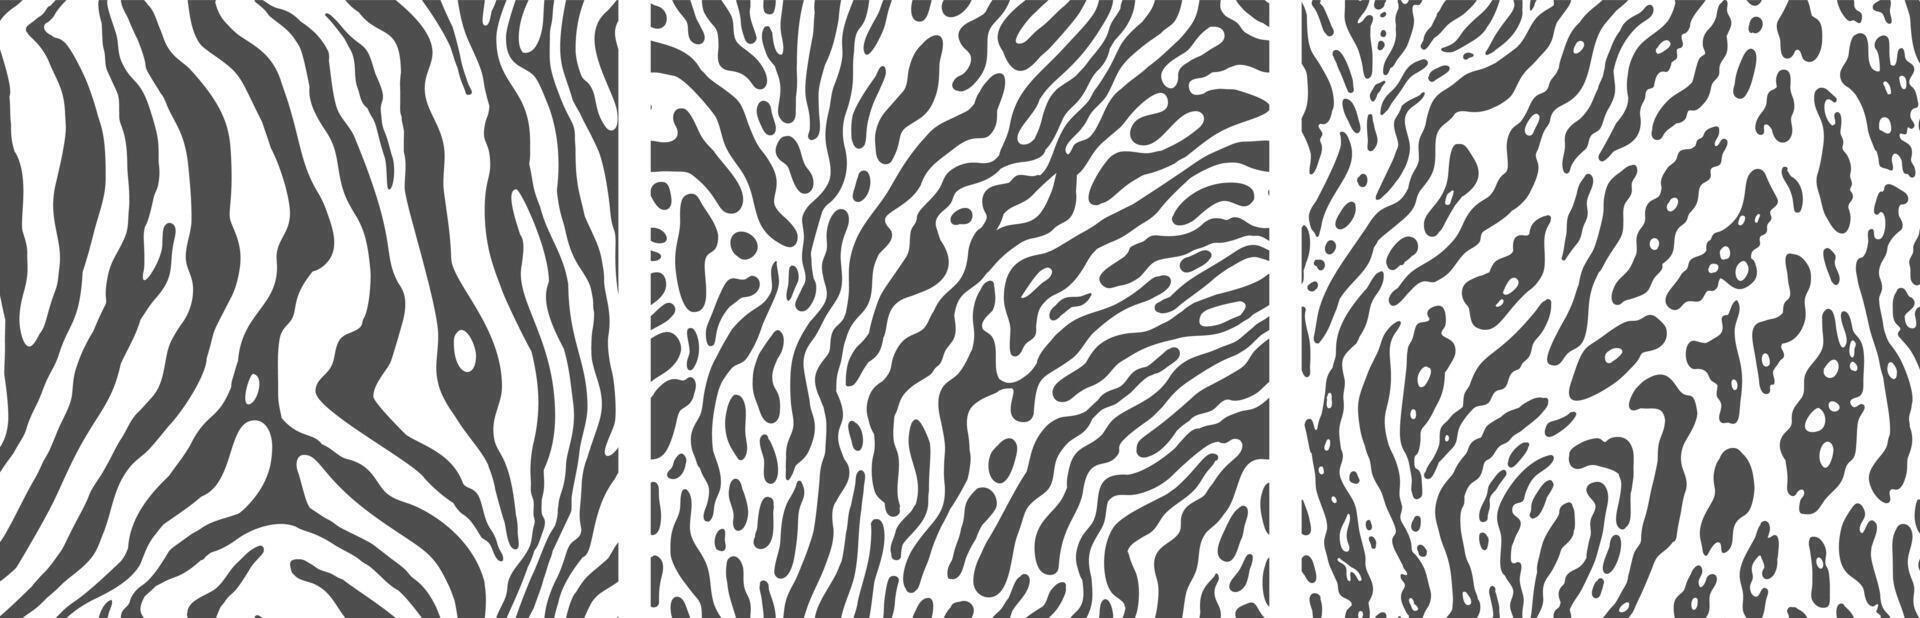 conjunto do monocromático zebra impressão fundos. vetor